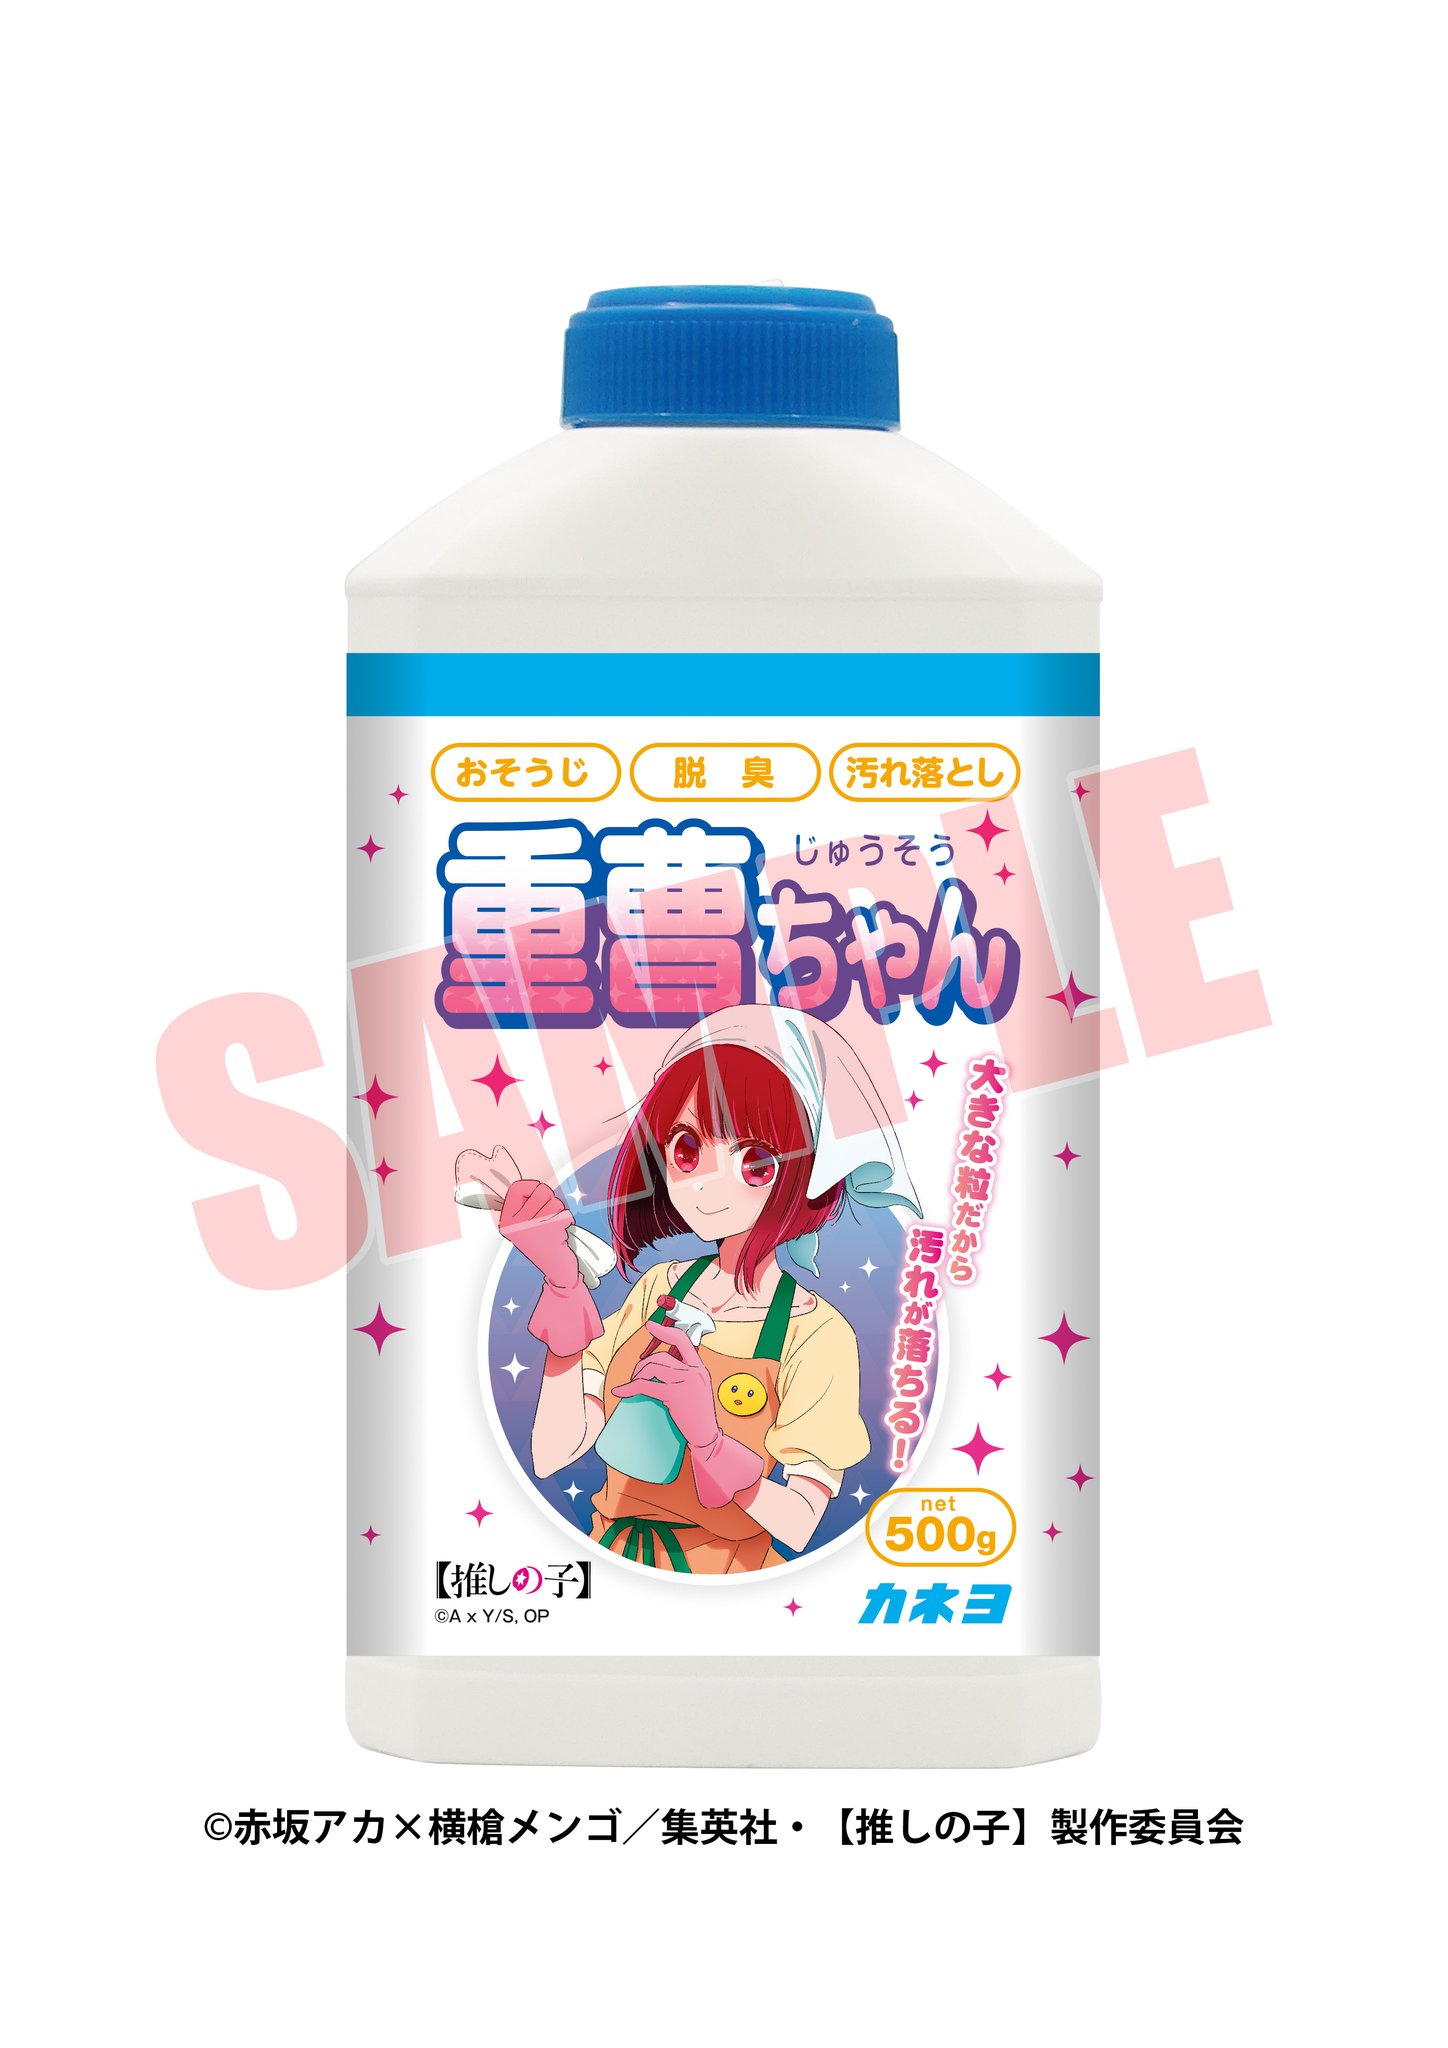 [情報] 加奈小蘇打清潔劑商品7月發售 